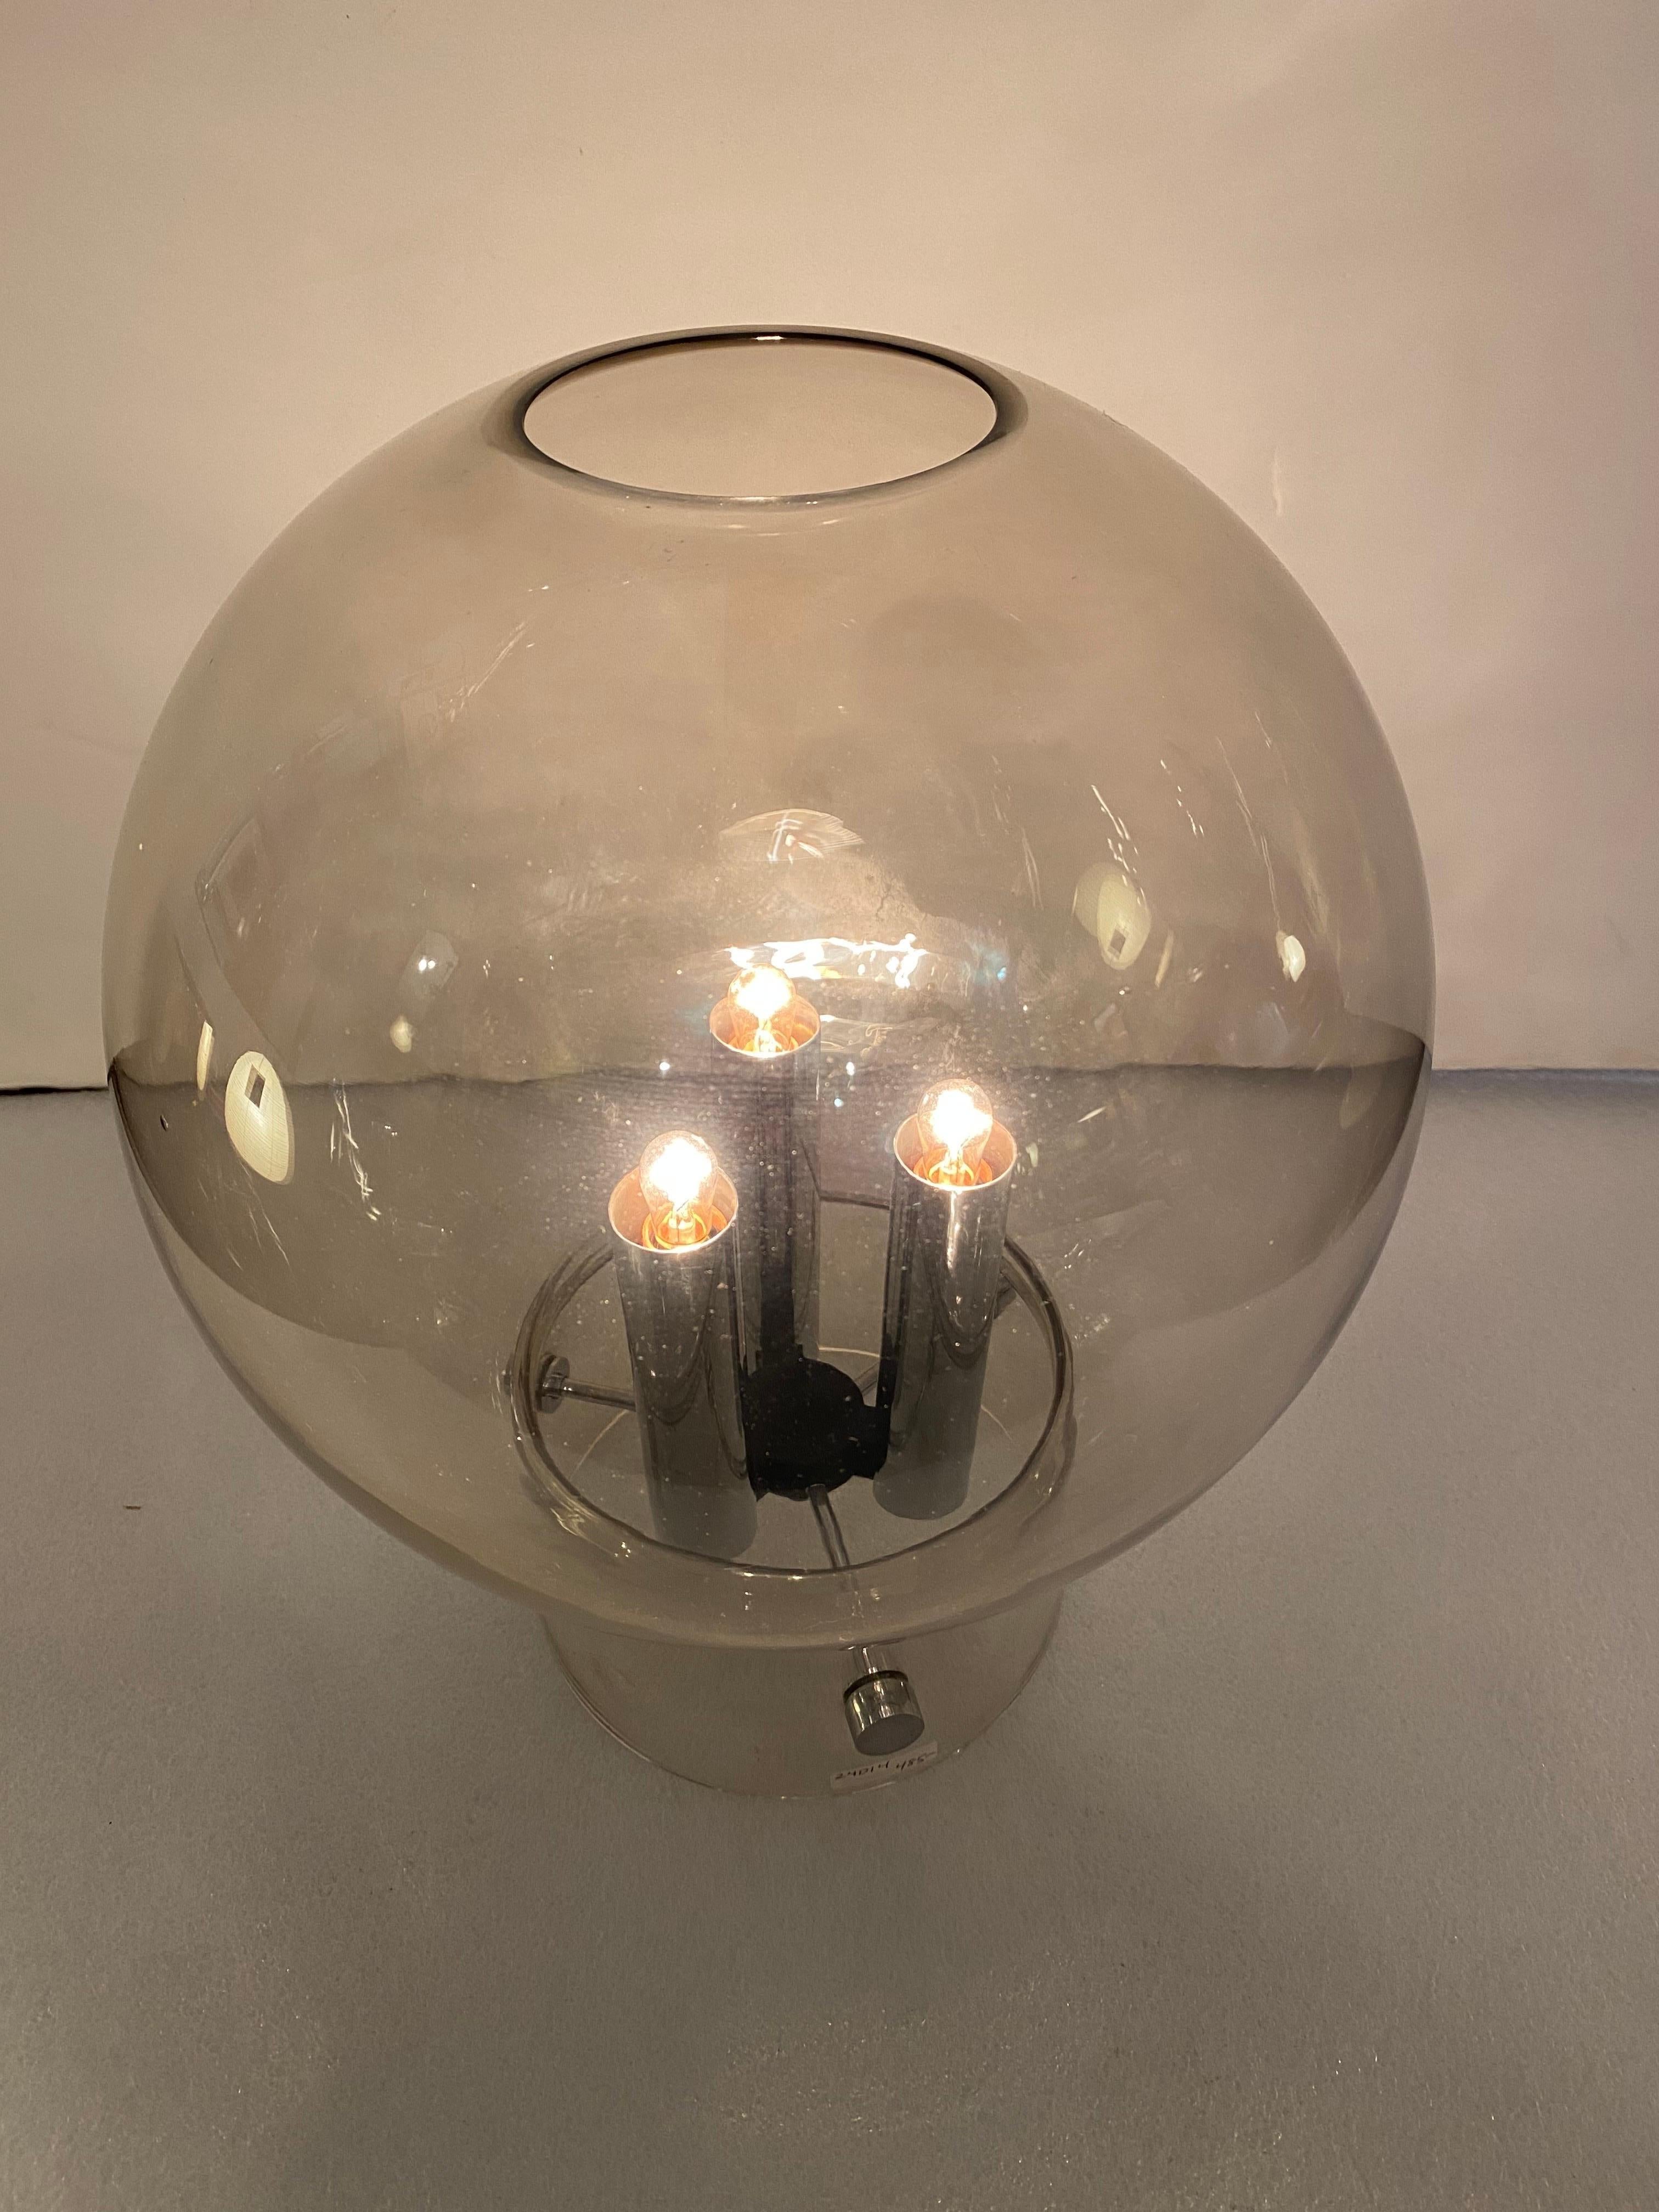 Lampe de table à boule en verre fumé avec accents chromés.  Prend 3 ampoules, pourrait être par Kovacs ou Koch et Lowy.  Belle apparence et utilisable dans de nombreuses applications !